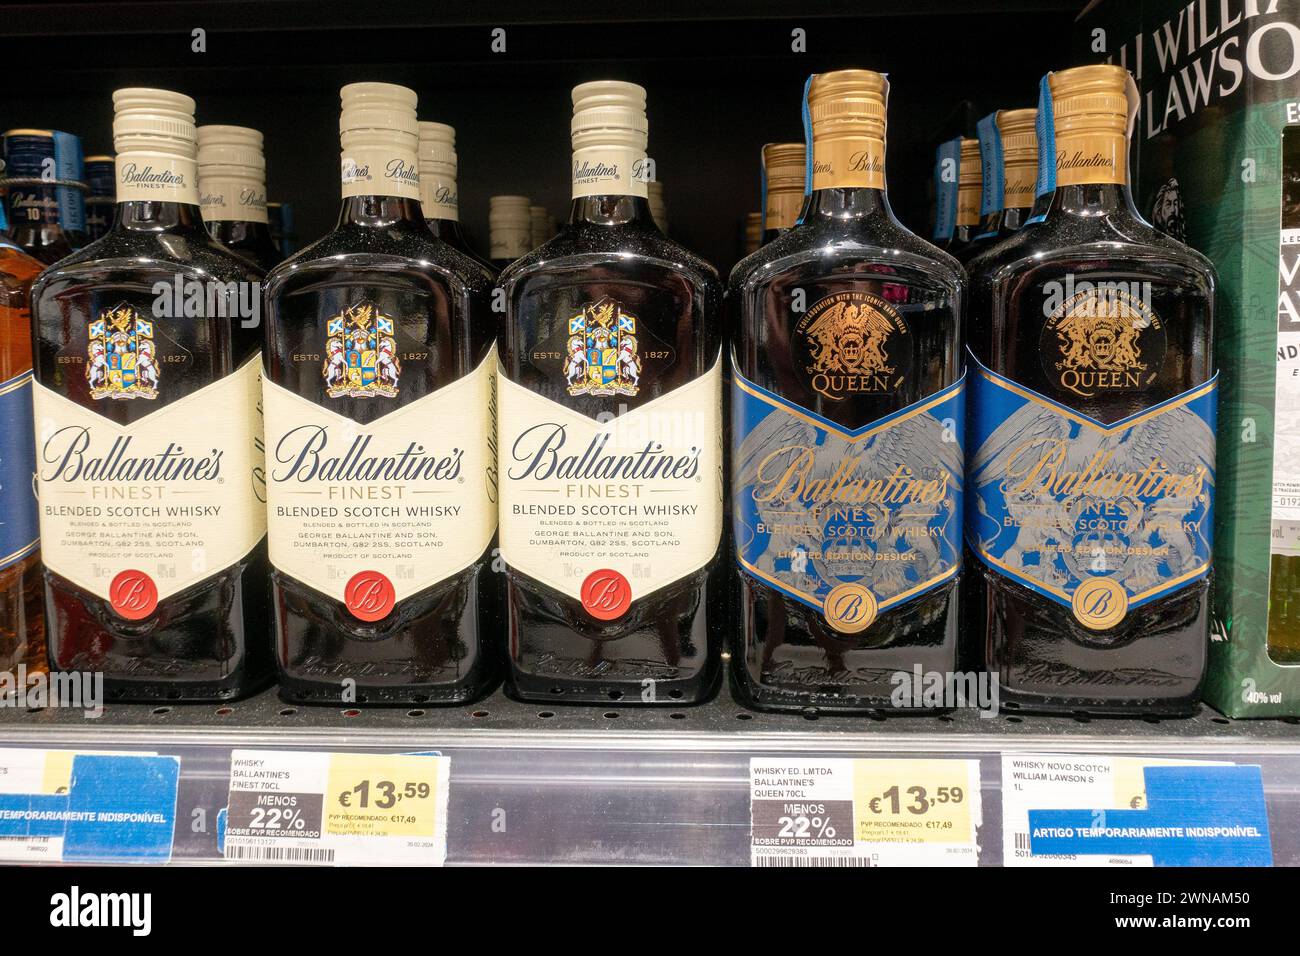 Ballantine's Scotch Bottle Limited Edition avec le logo Rock Band Queens exporté au Portugal Banque D'Images